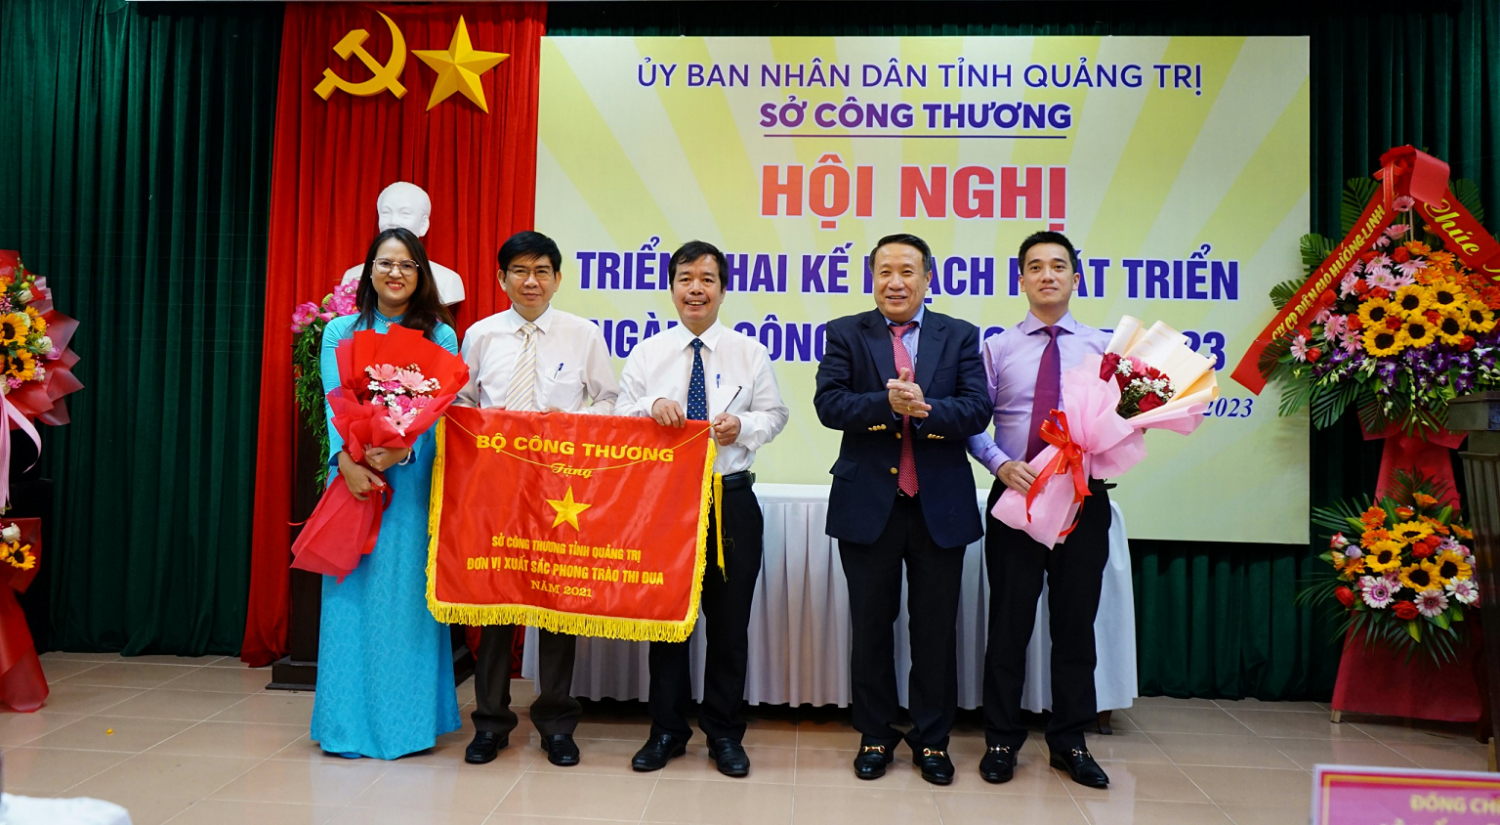 Phó Chủ tịch Thường trực UBND tỉnh Hà Sỹ Đồng trao tặng cờ thi đua của  Bộ Công Thương cho Sở Công Thương Quảng Trị - Ảnh: L.A